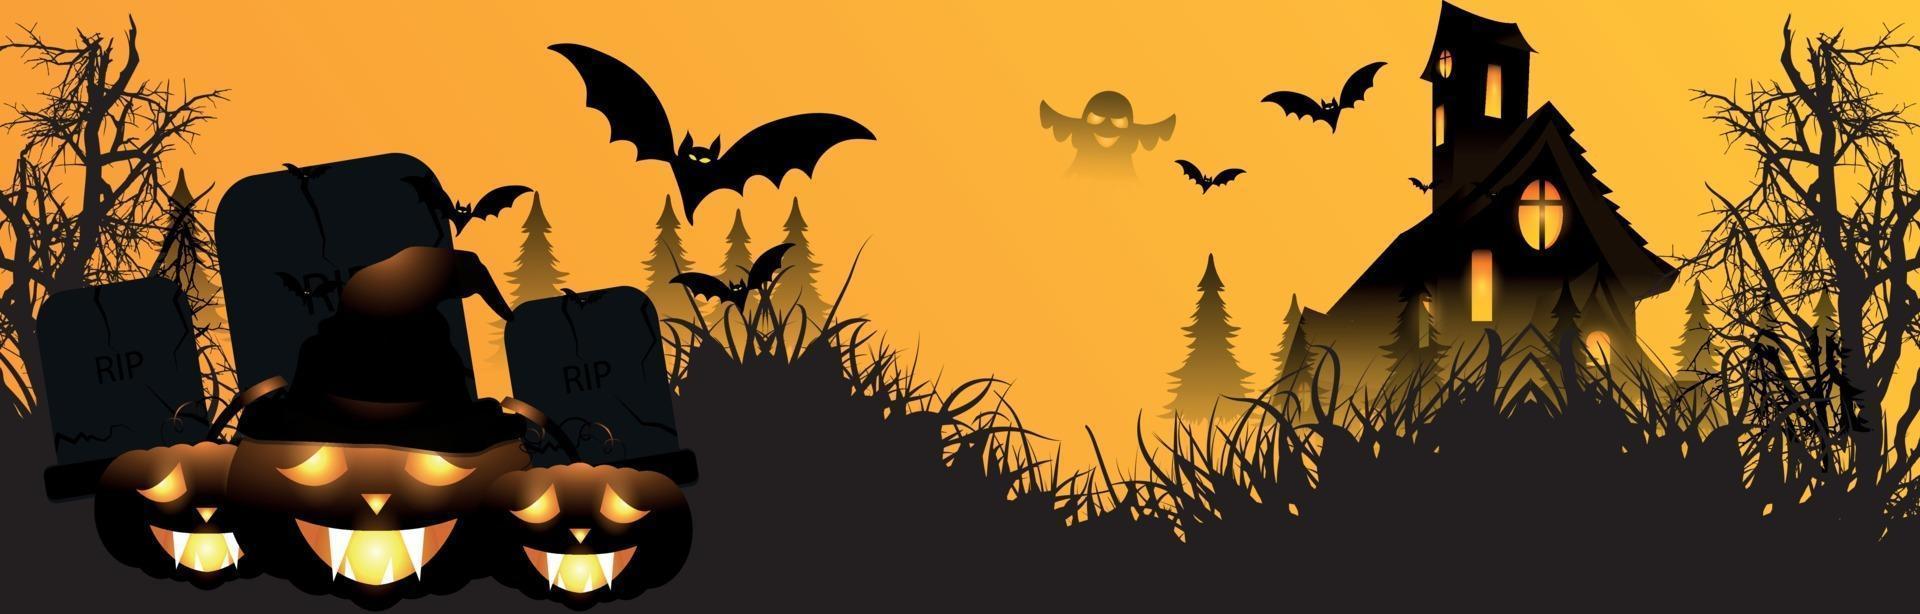 bannière de fête d & # 39; halloween heureux avec citrouille rougeoyante de maison hounted et chauves-souris volantes vecteur